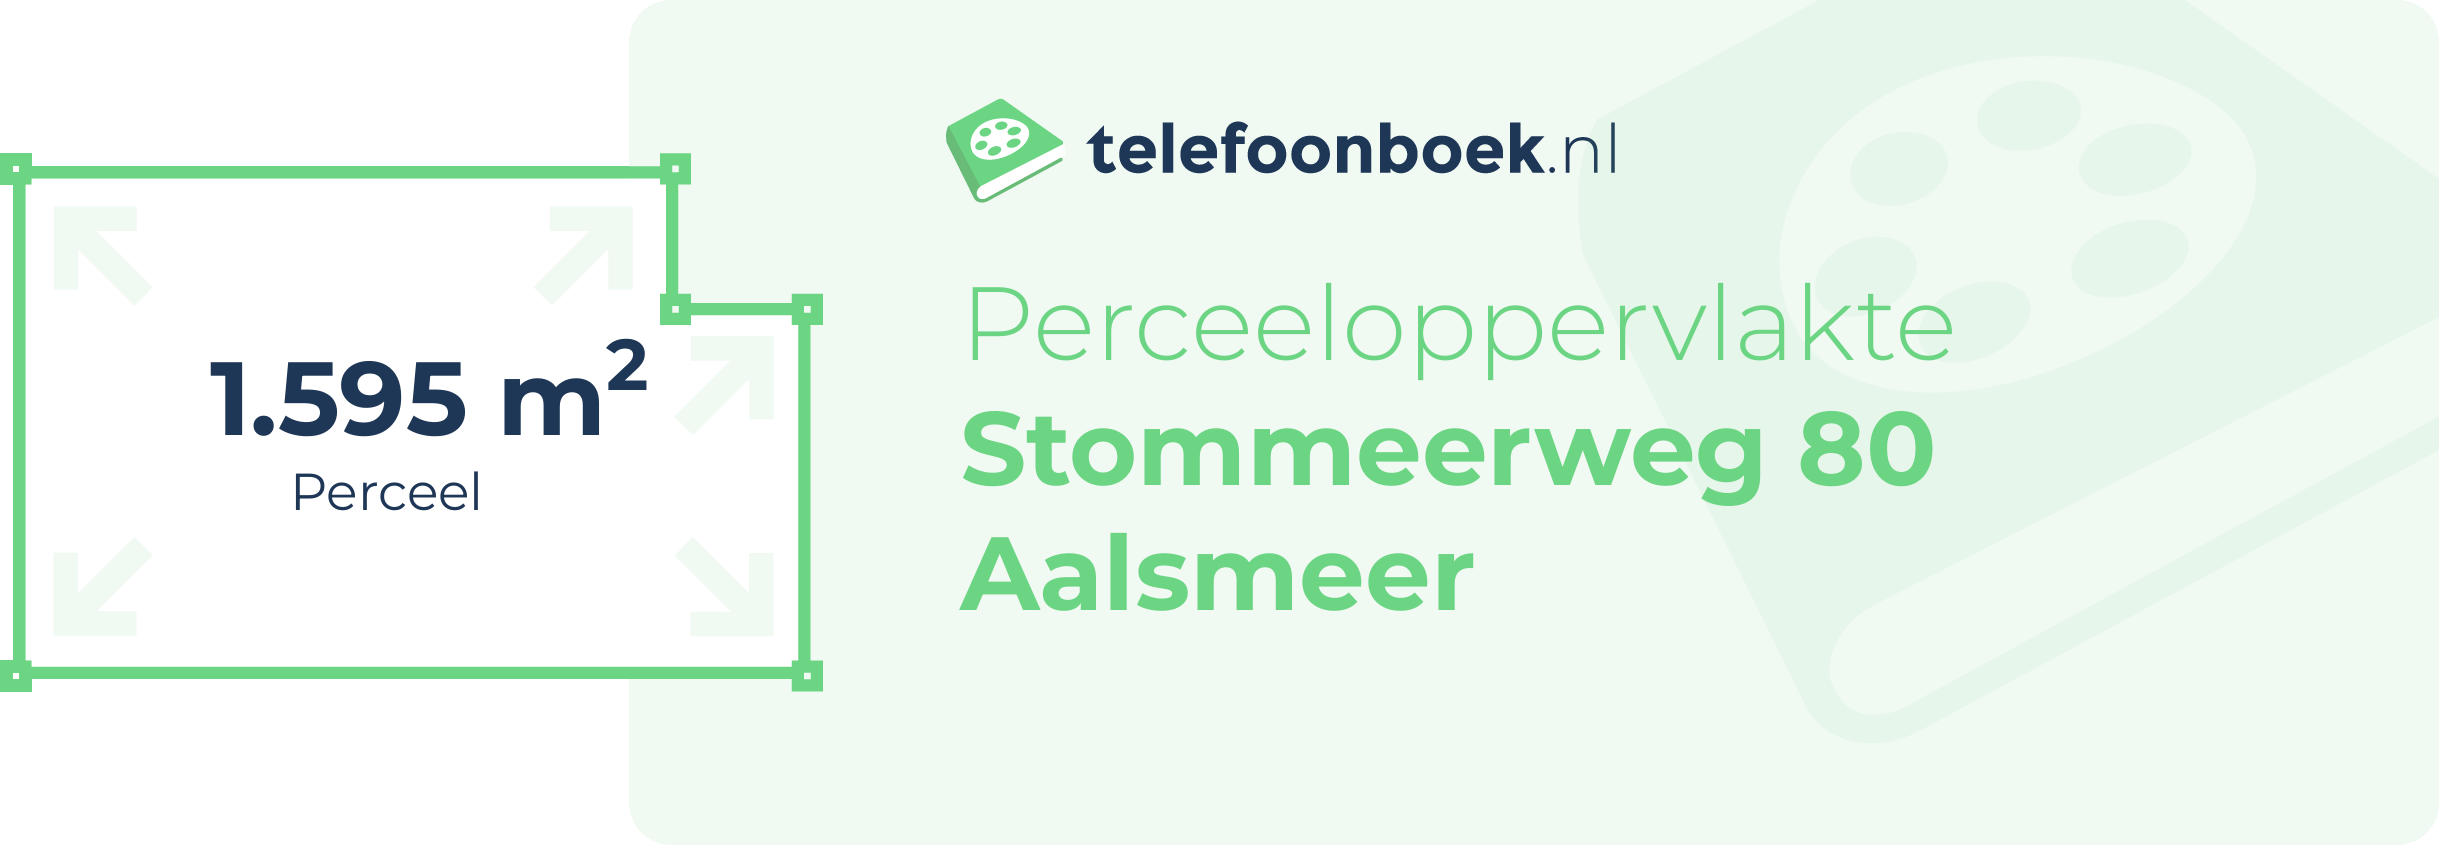 Perceeloppervlakte Stommeerweg 80 Aalsmeer